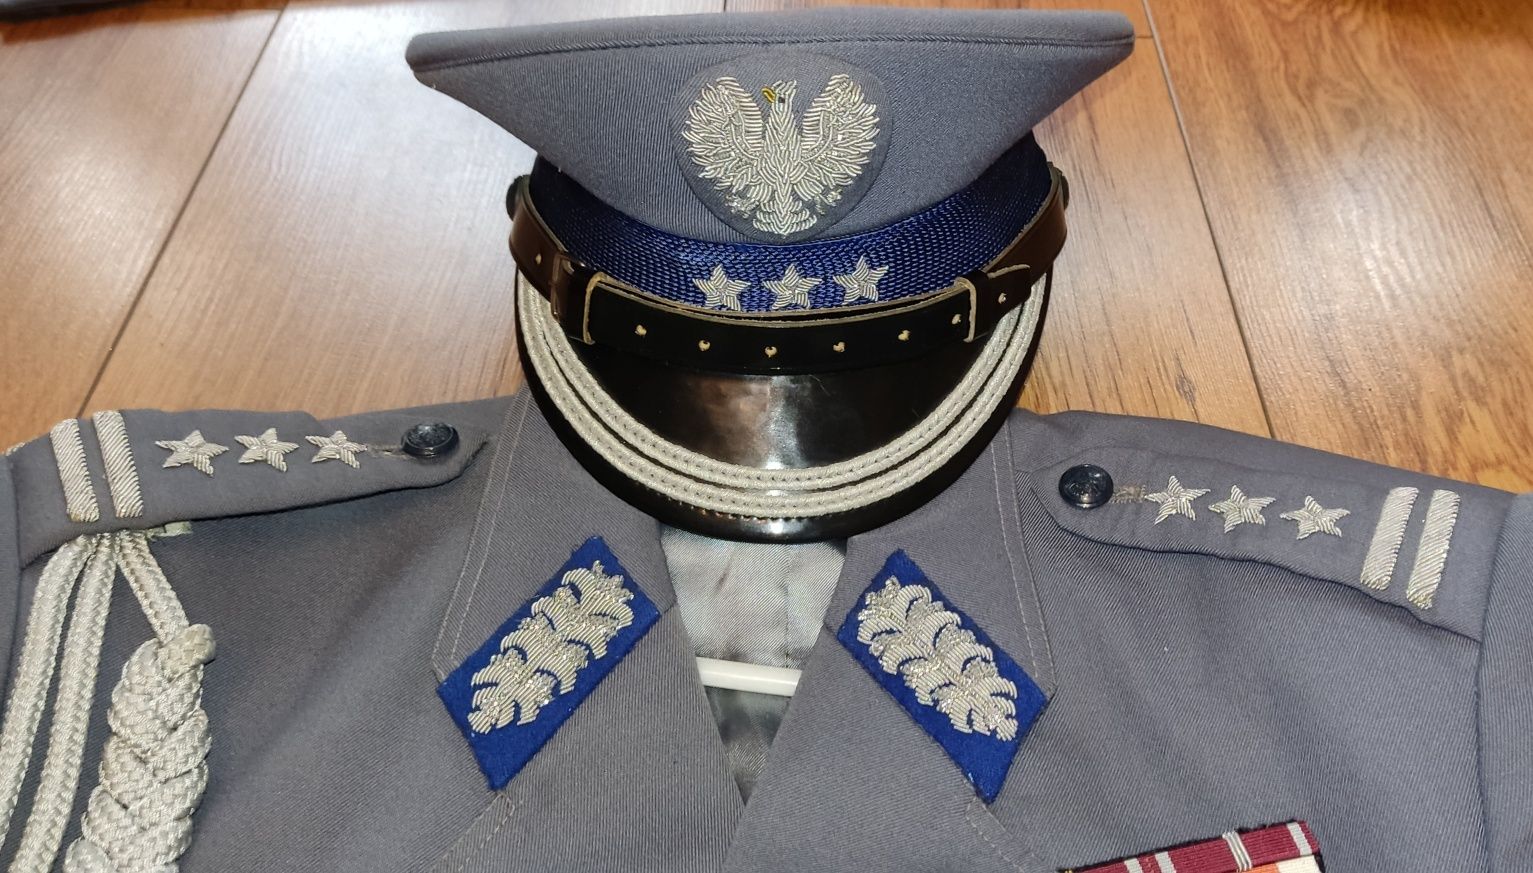 Mundur milicyjny Milicja pułkownik oficer MO czapka baretki sznur